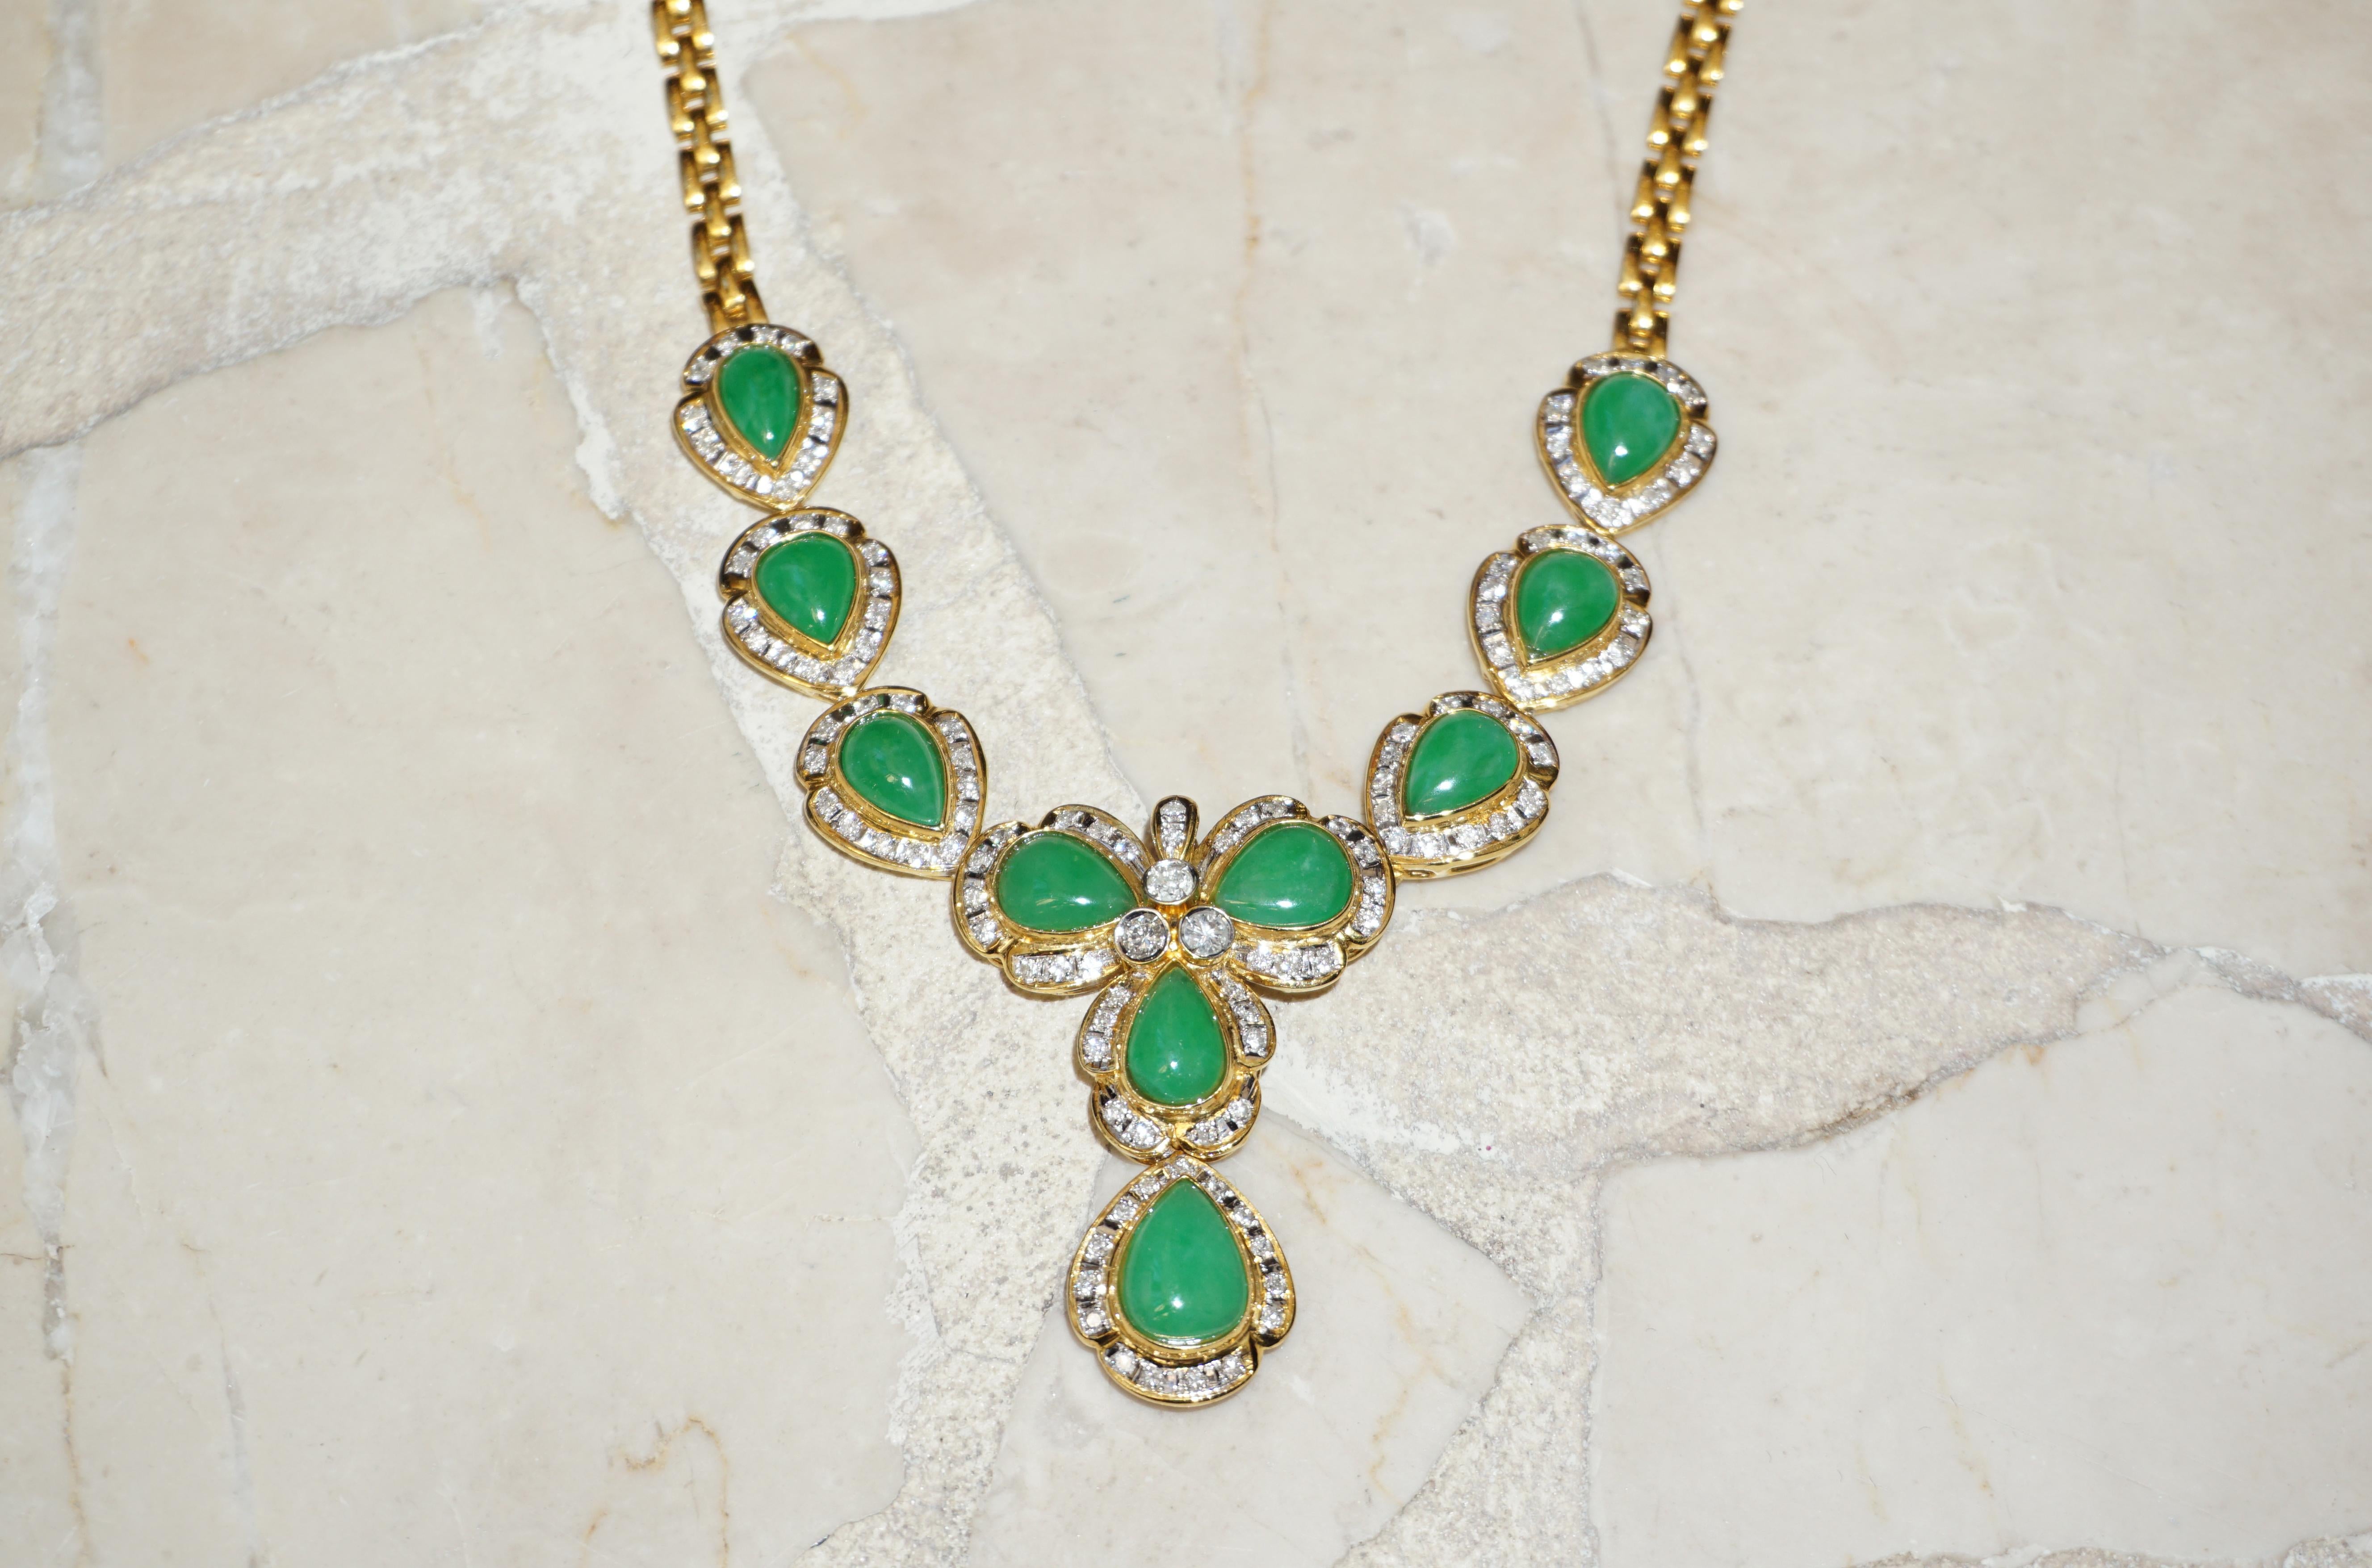 barbara hutton jade necklace